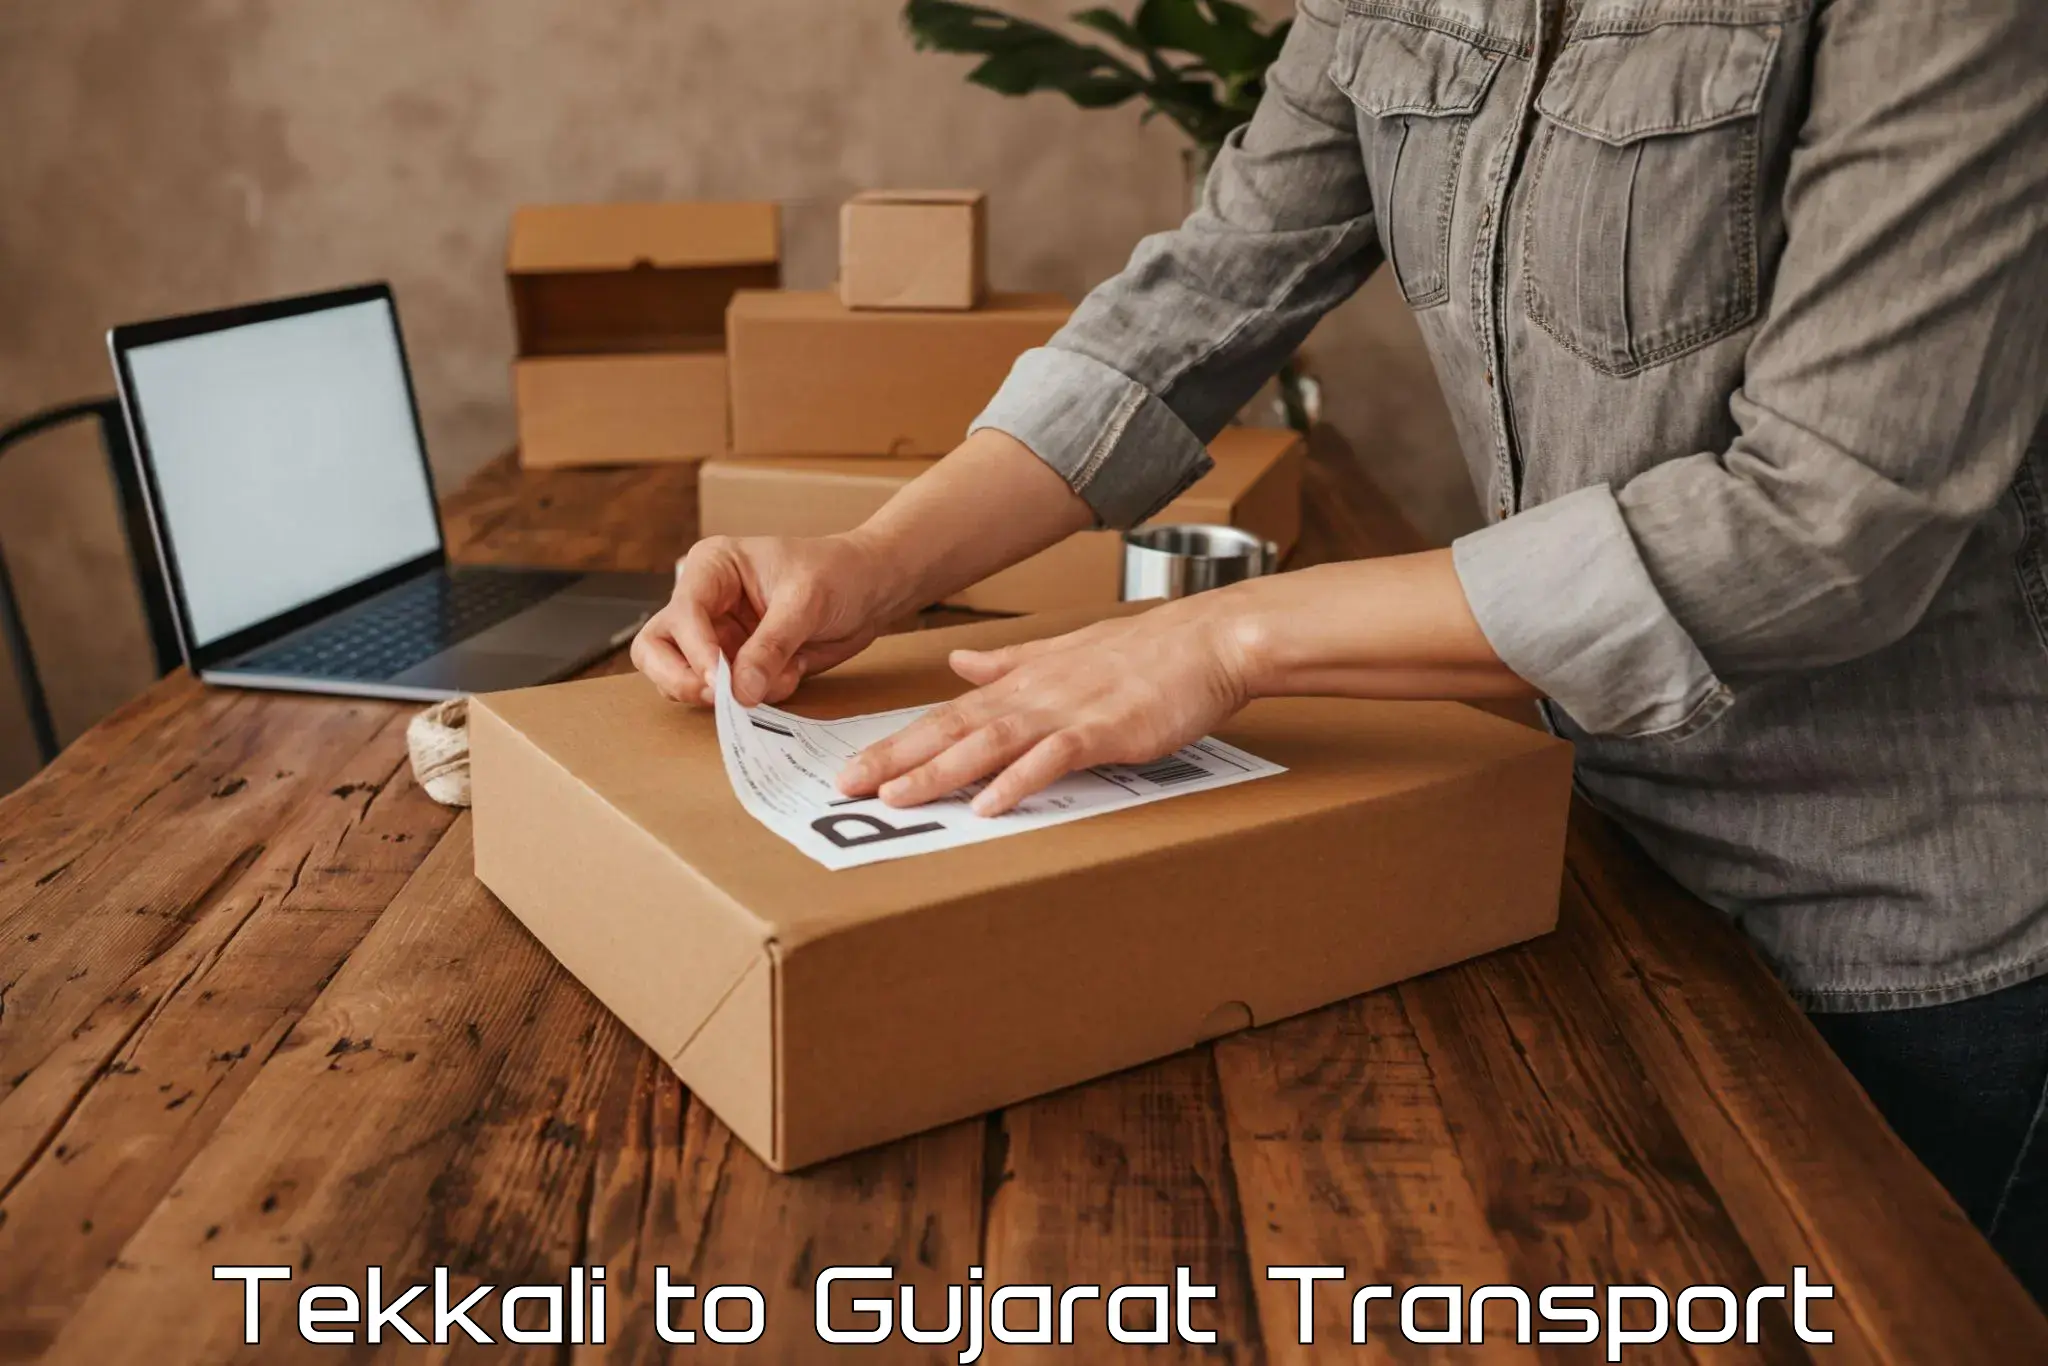 Transport in sharing Tekkali to Modasa